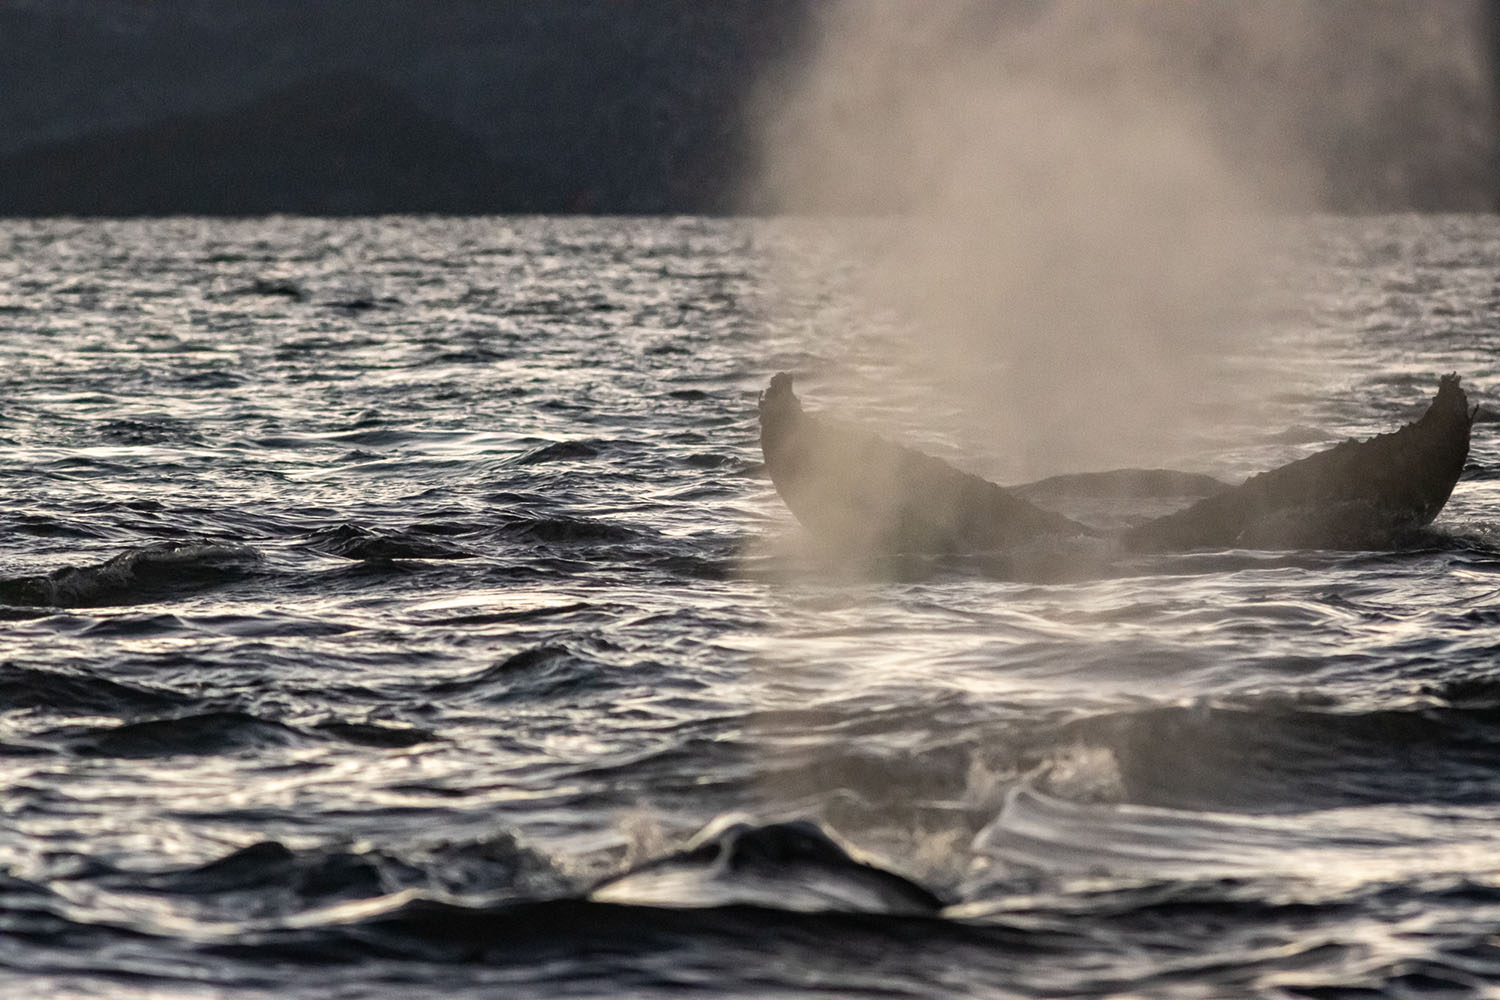 voyage scientifique - orques et baleines a bosse de norvege 36